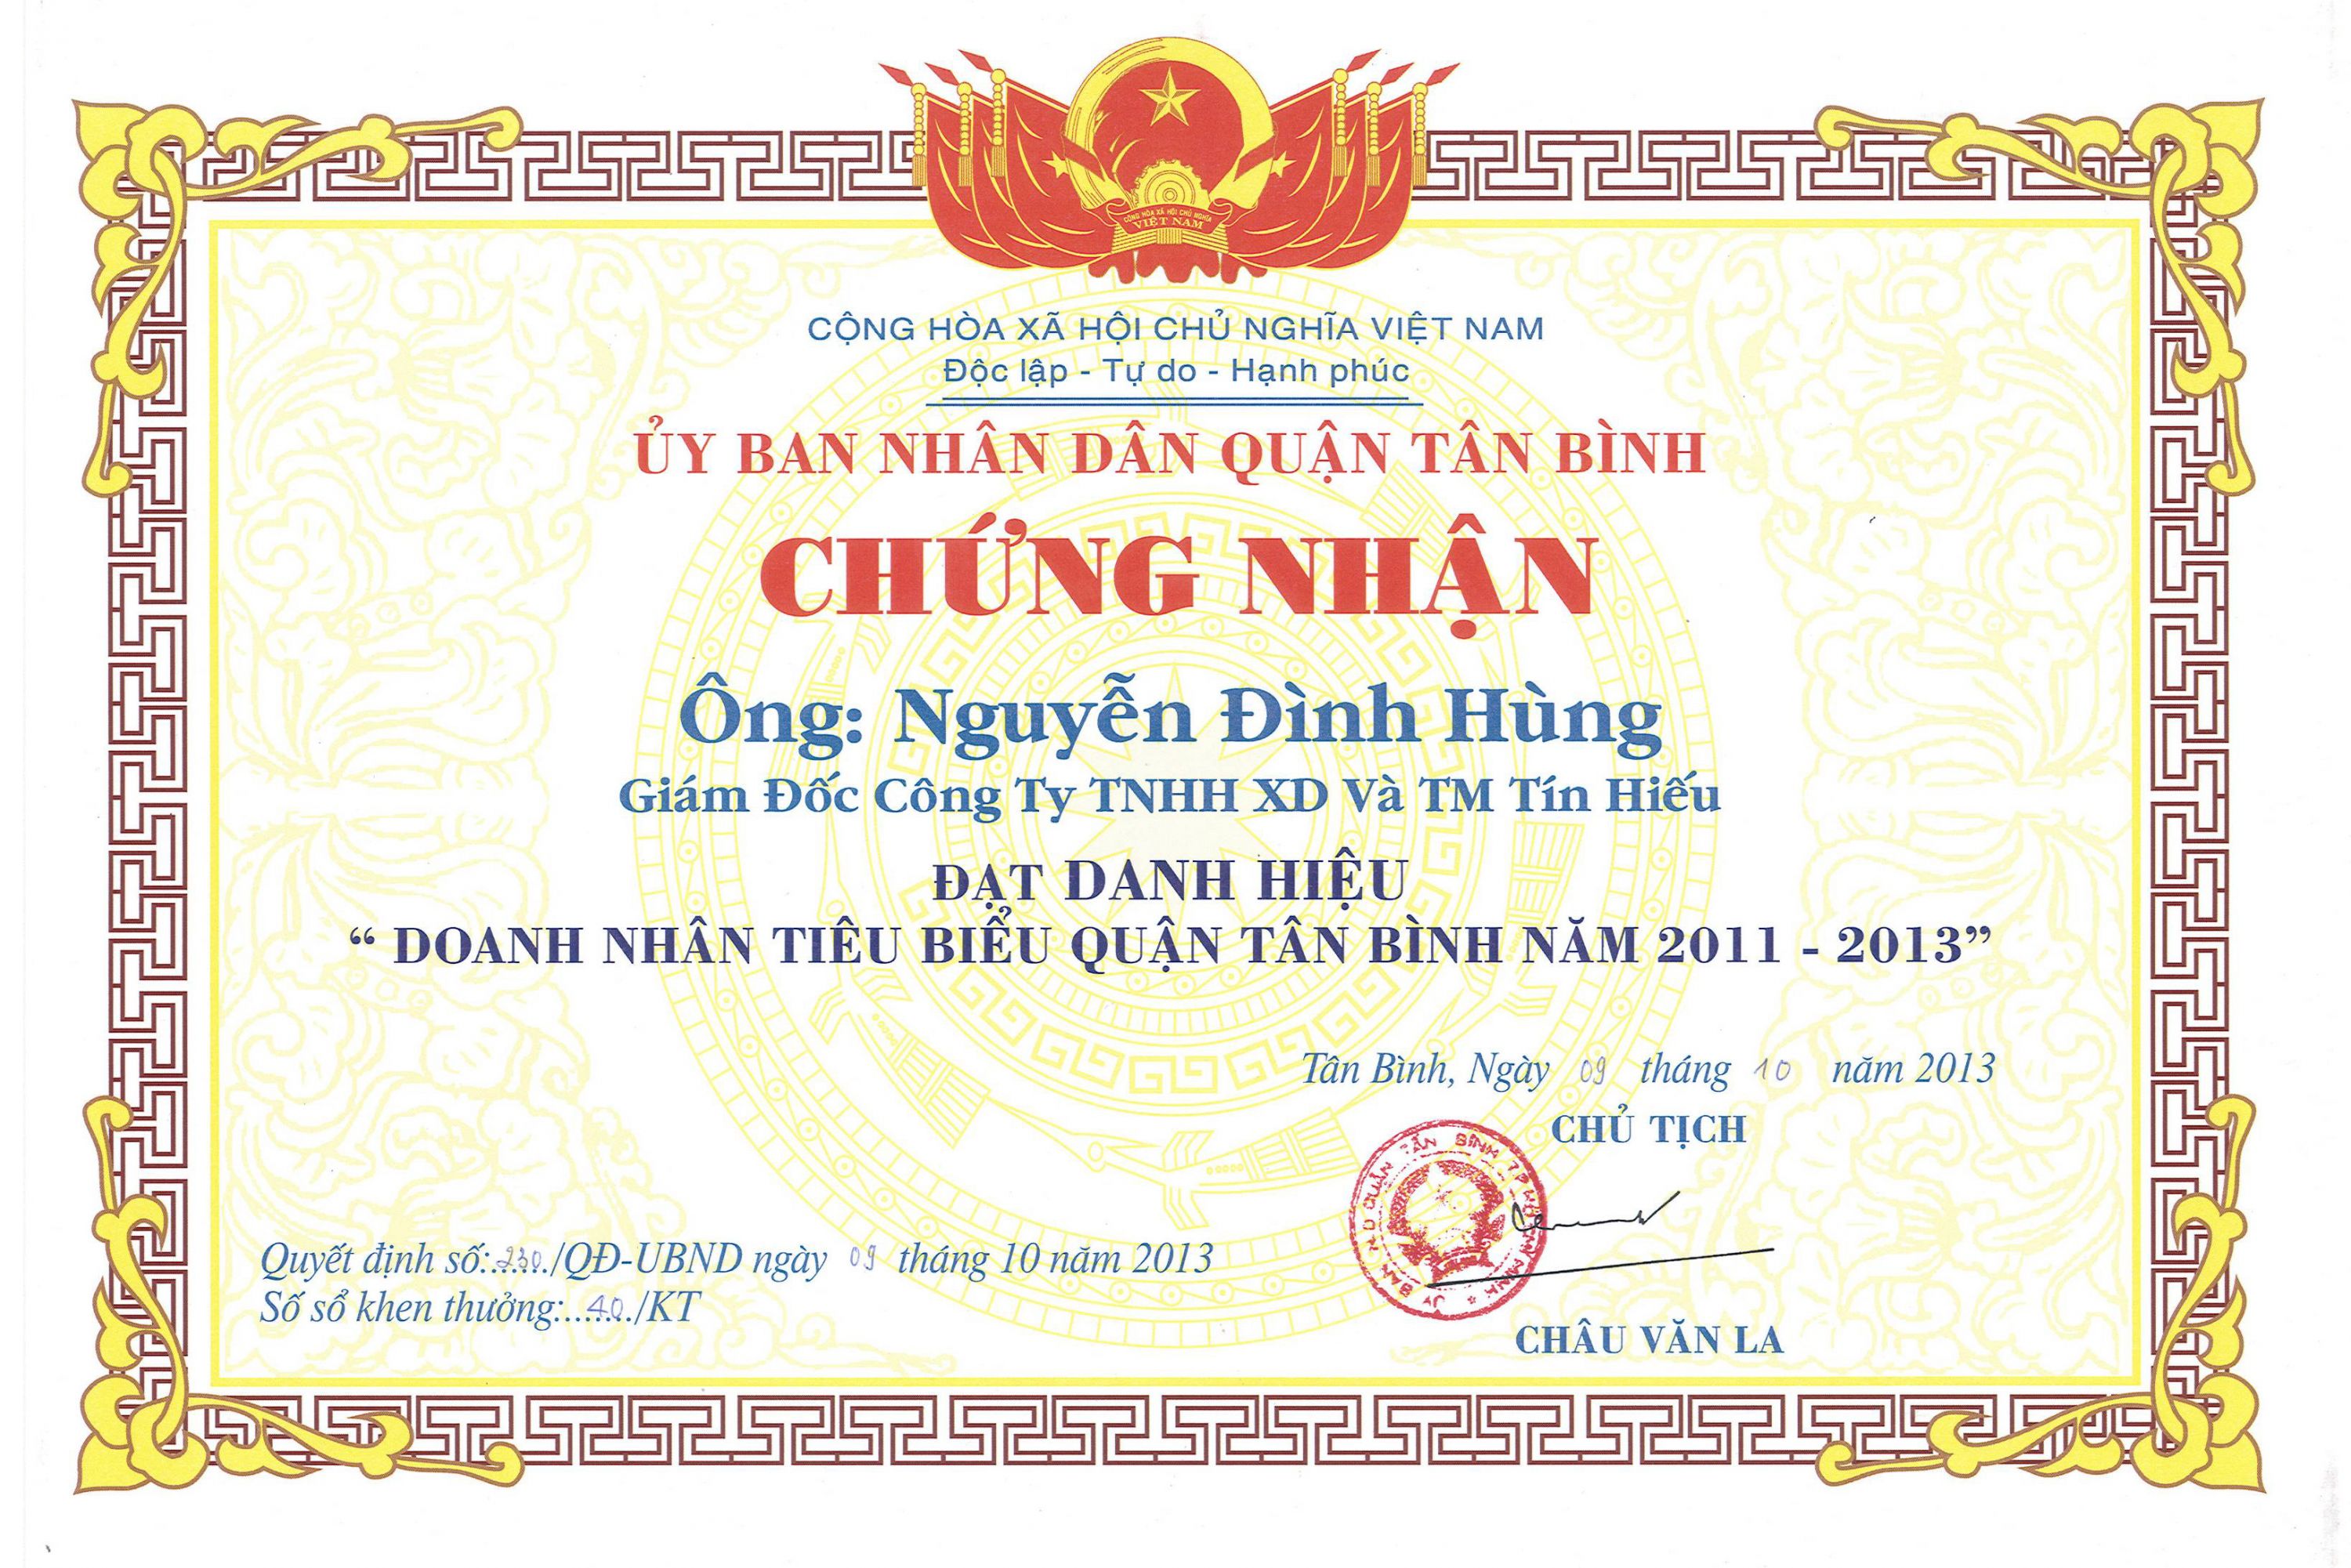 Chứng nhận doanh nhân tiêu biểu quận Tân Bình